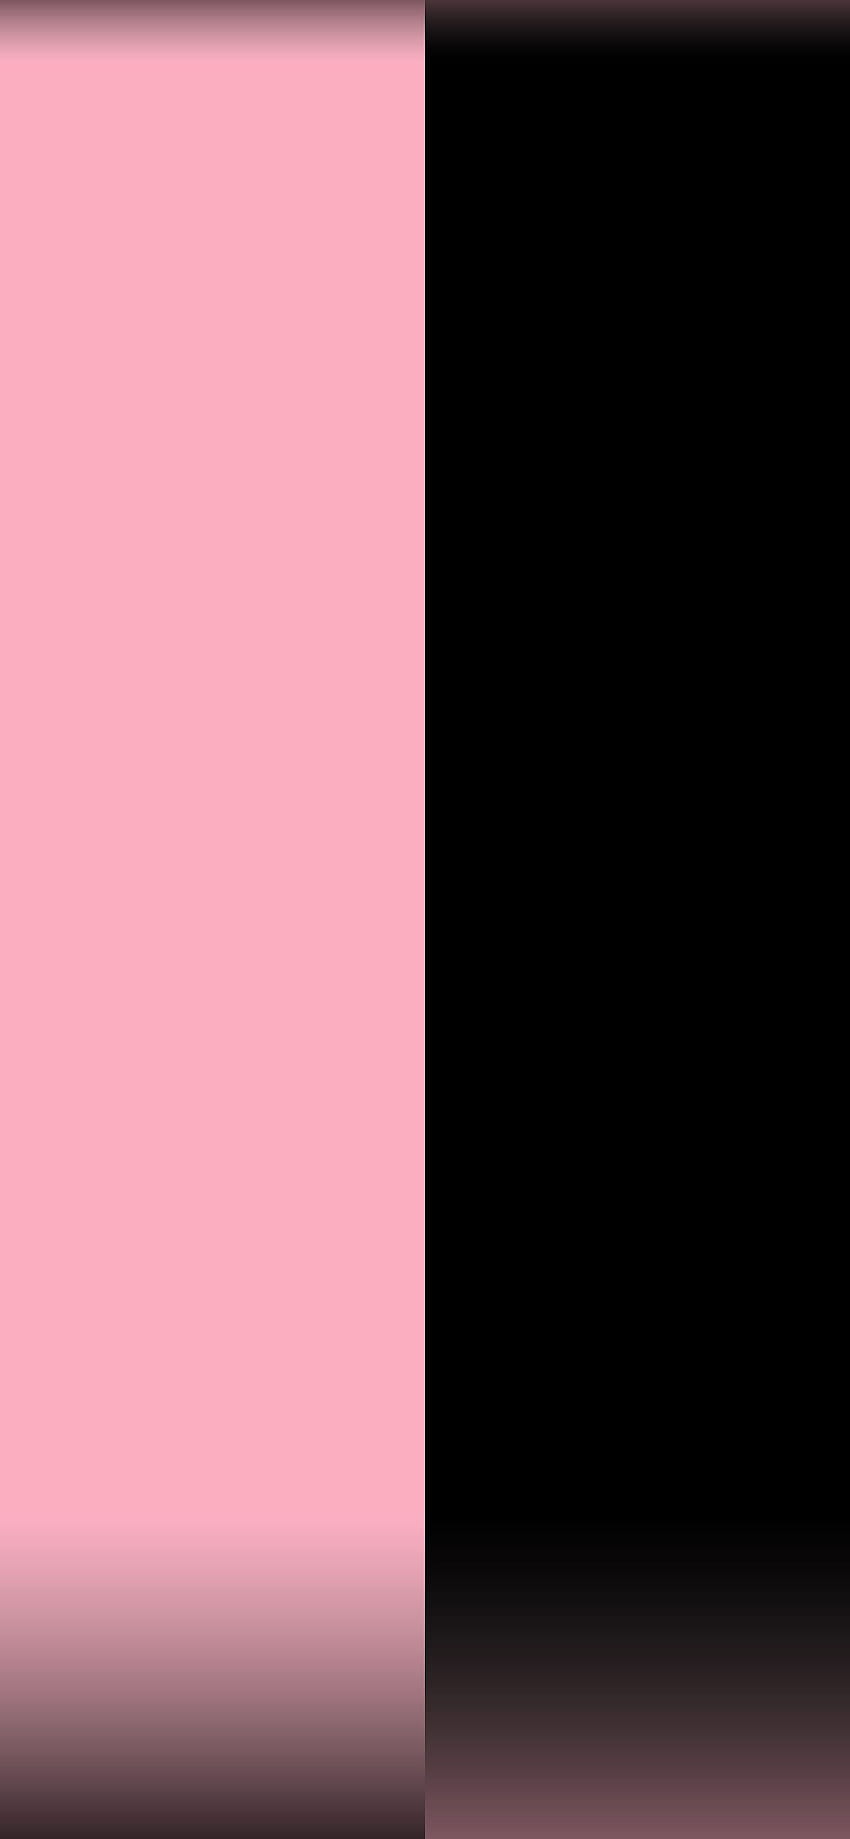 Negro y rosa, colores mitad y mitad. fondo de pantalla del teléfono